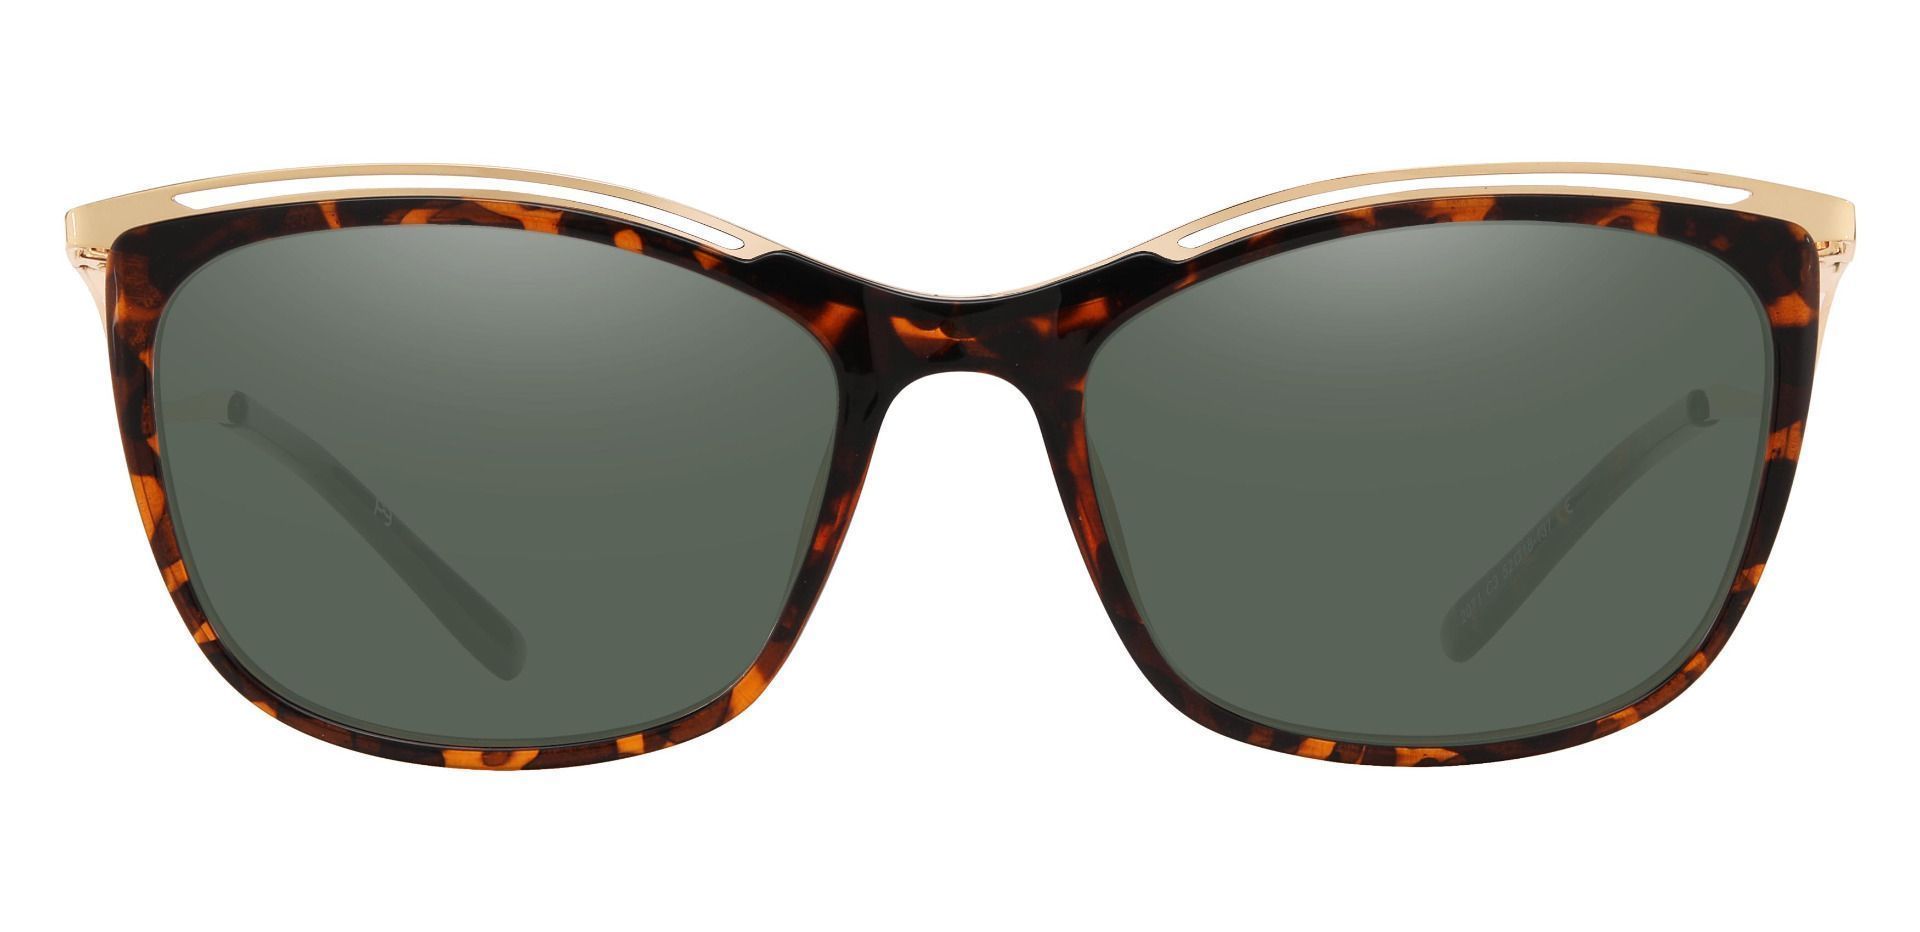 Enola Cat Eye Prescription Sunglasses - Tortoise Frame With Green Lenses